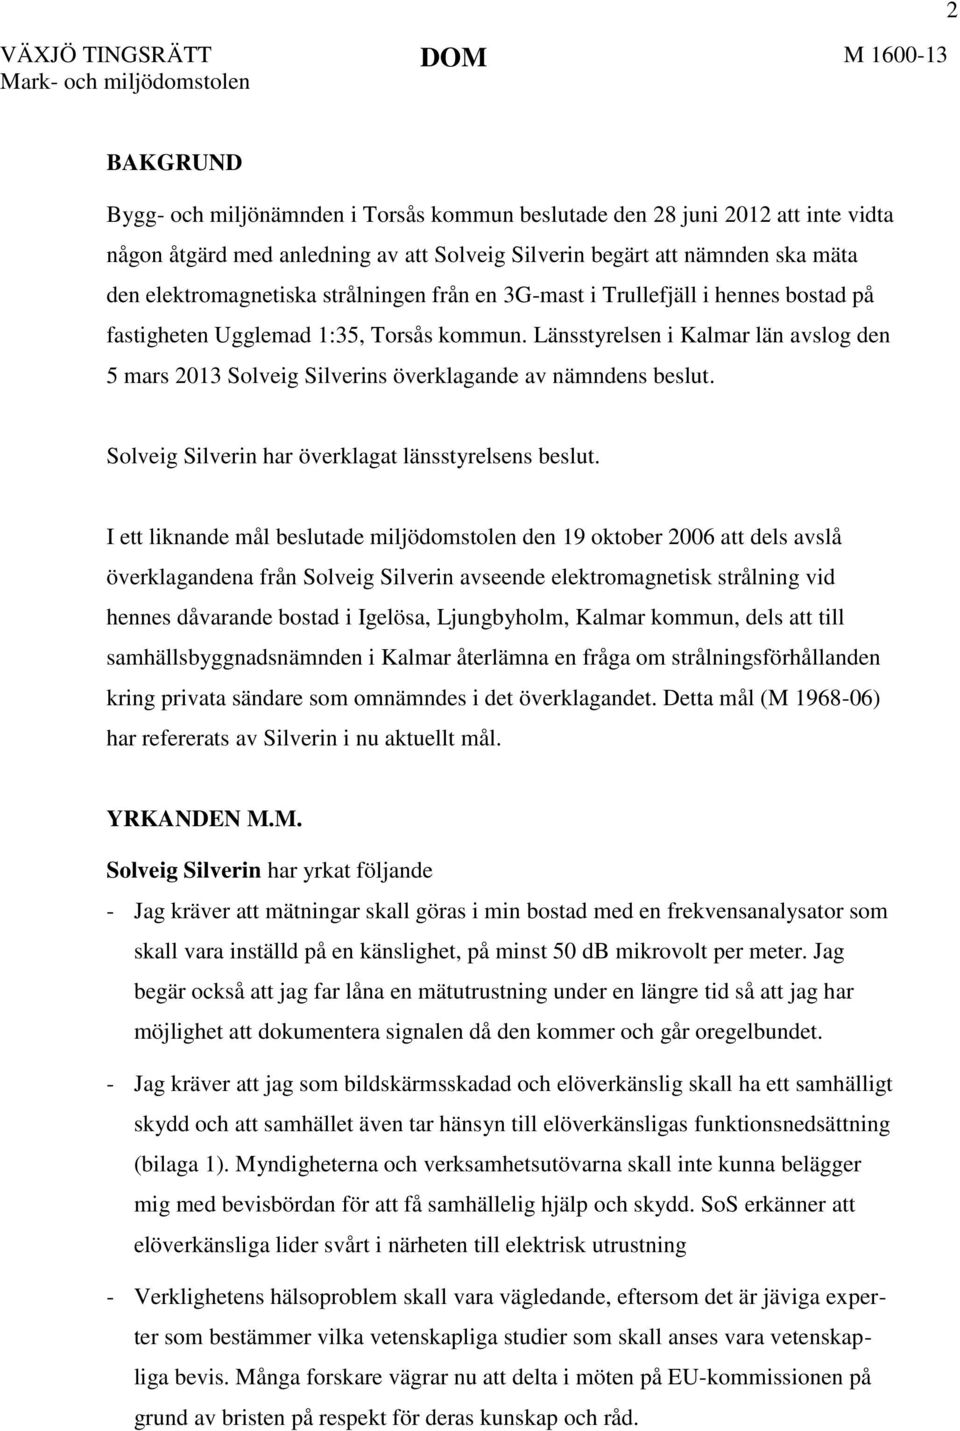 Länsstyrelsen i Kalmar län avslog den 5 mars 2013 Solveig Silverins överklagande av nämndens beslut. Solveig Silverin har överklagat länsstyrelsens beslut.